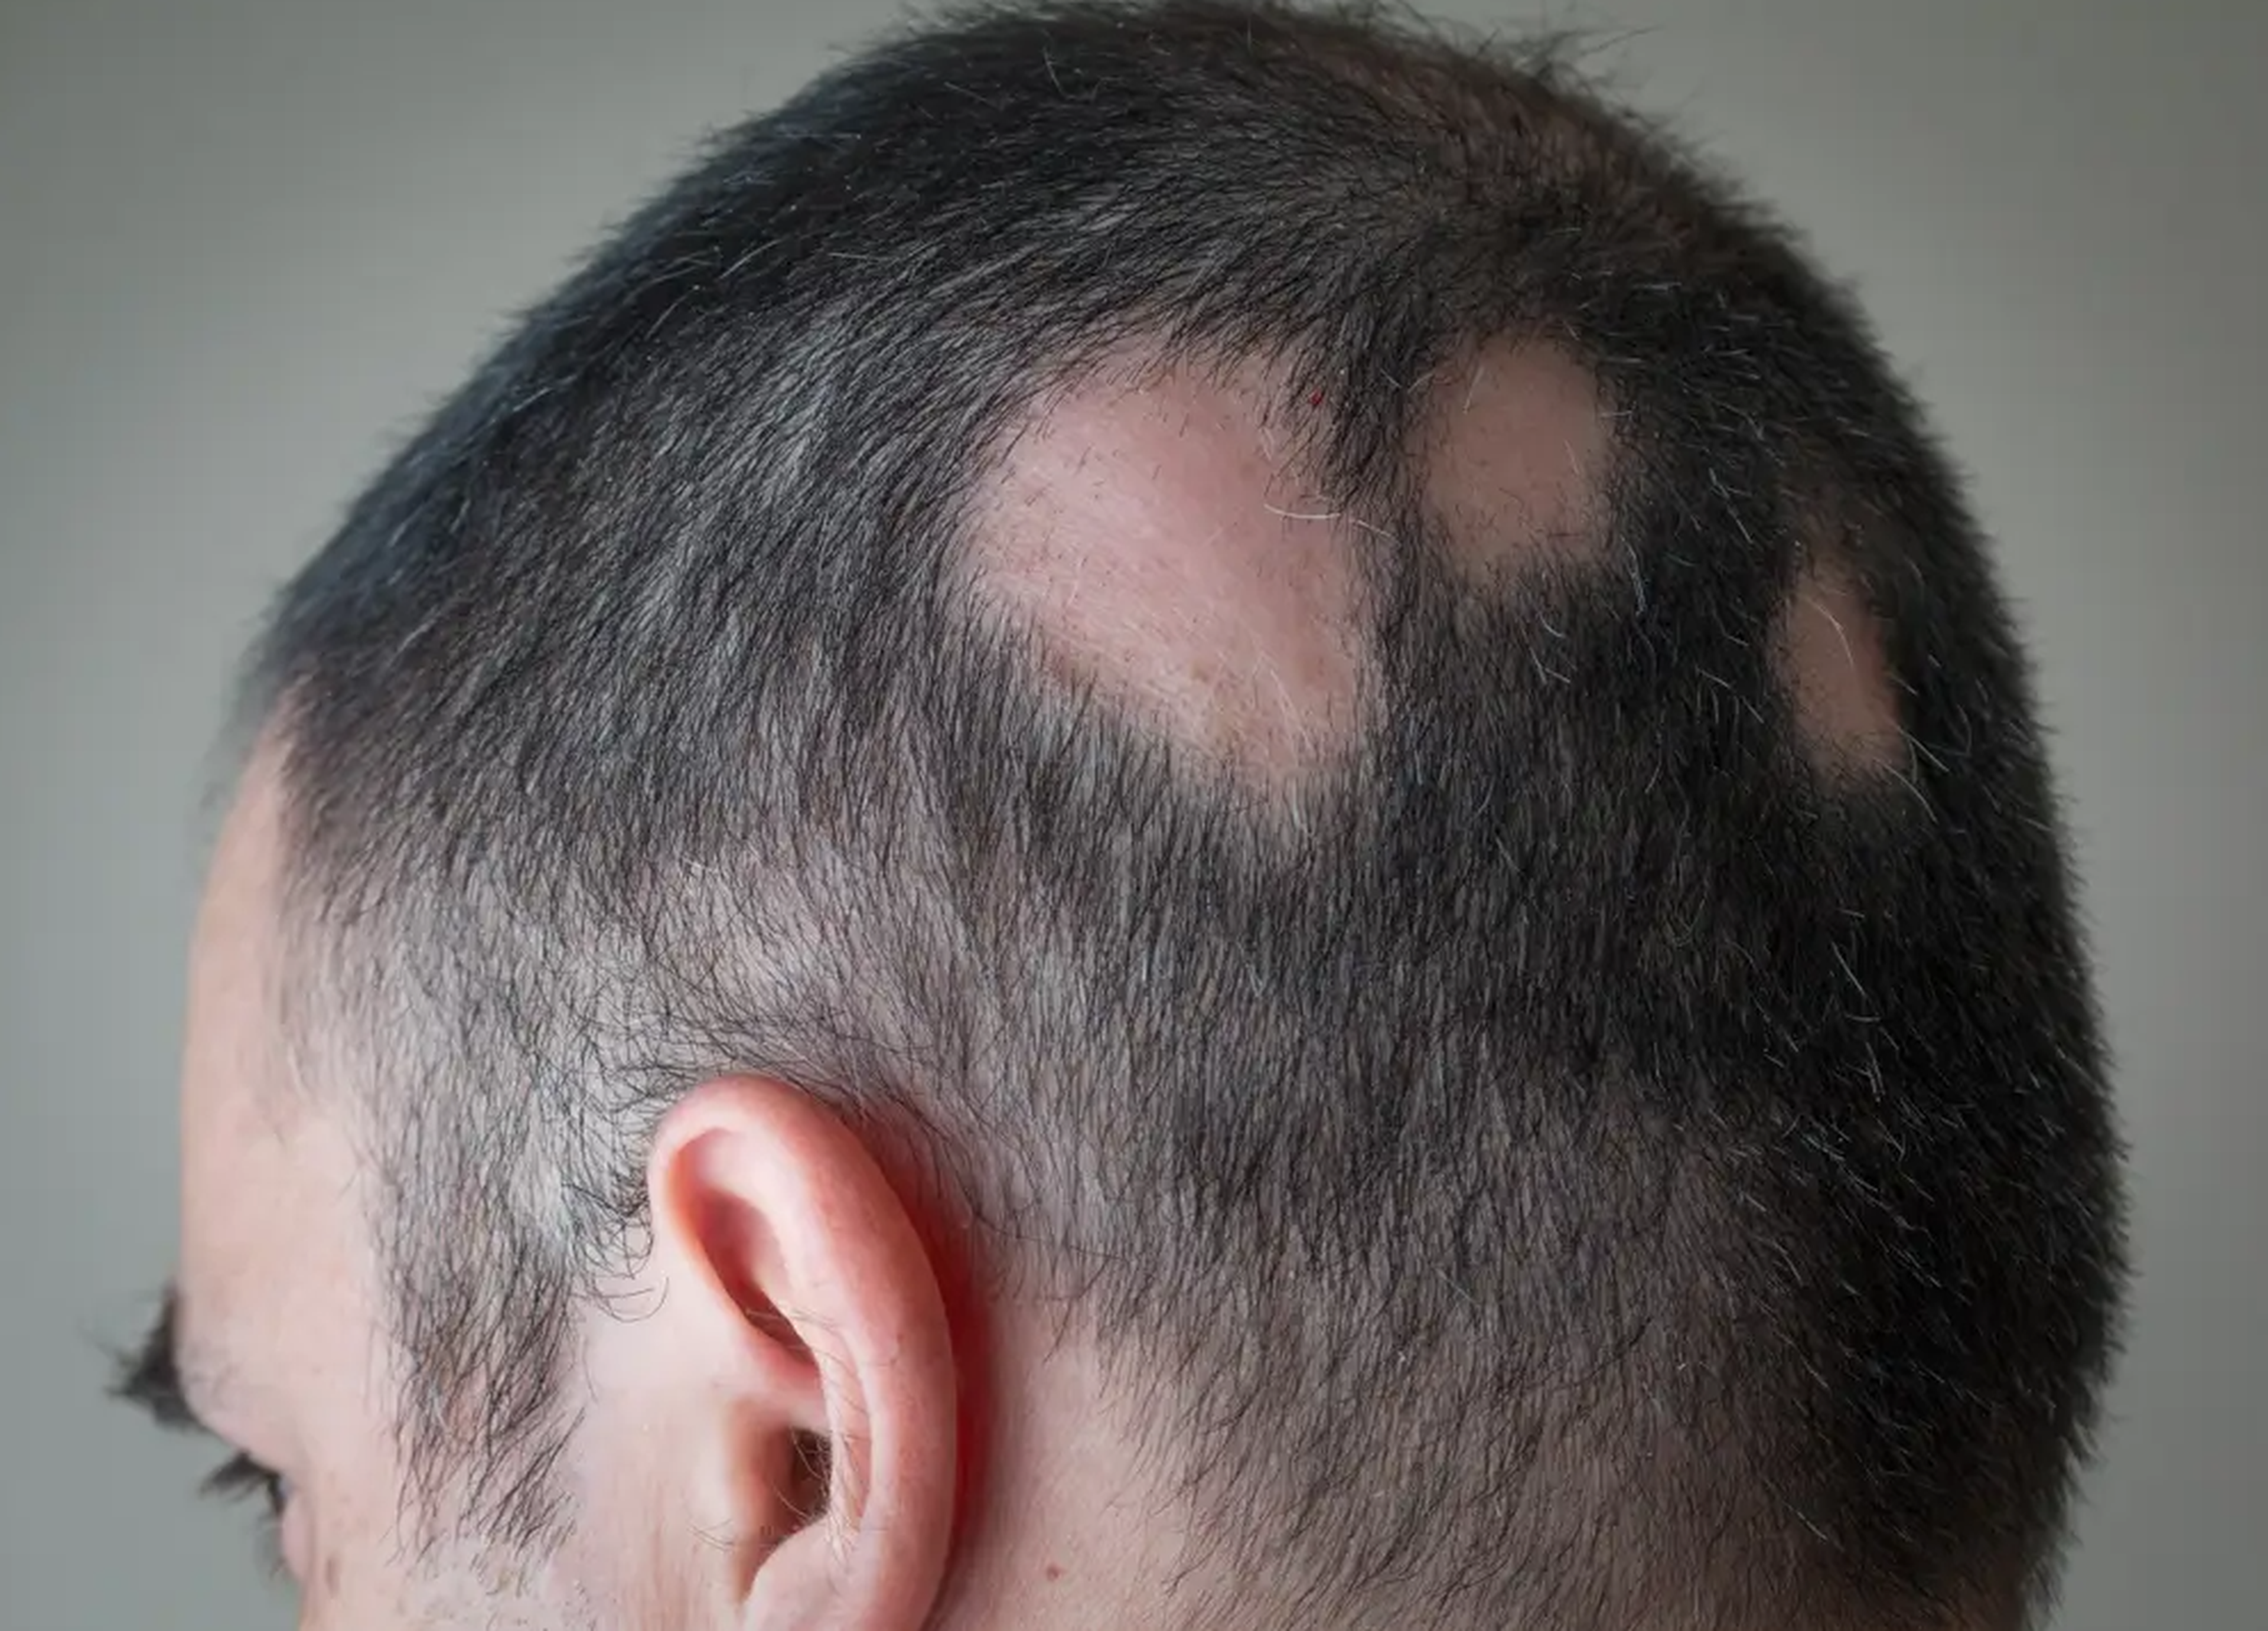 La alopecia areata puede producir que el cabello se caiga por completo o en parches.